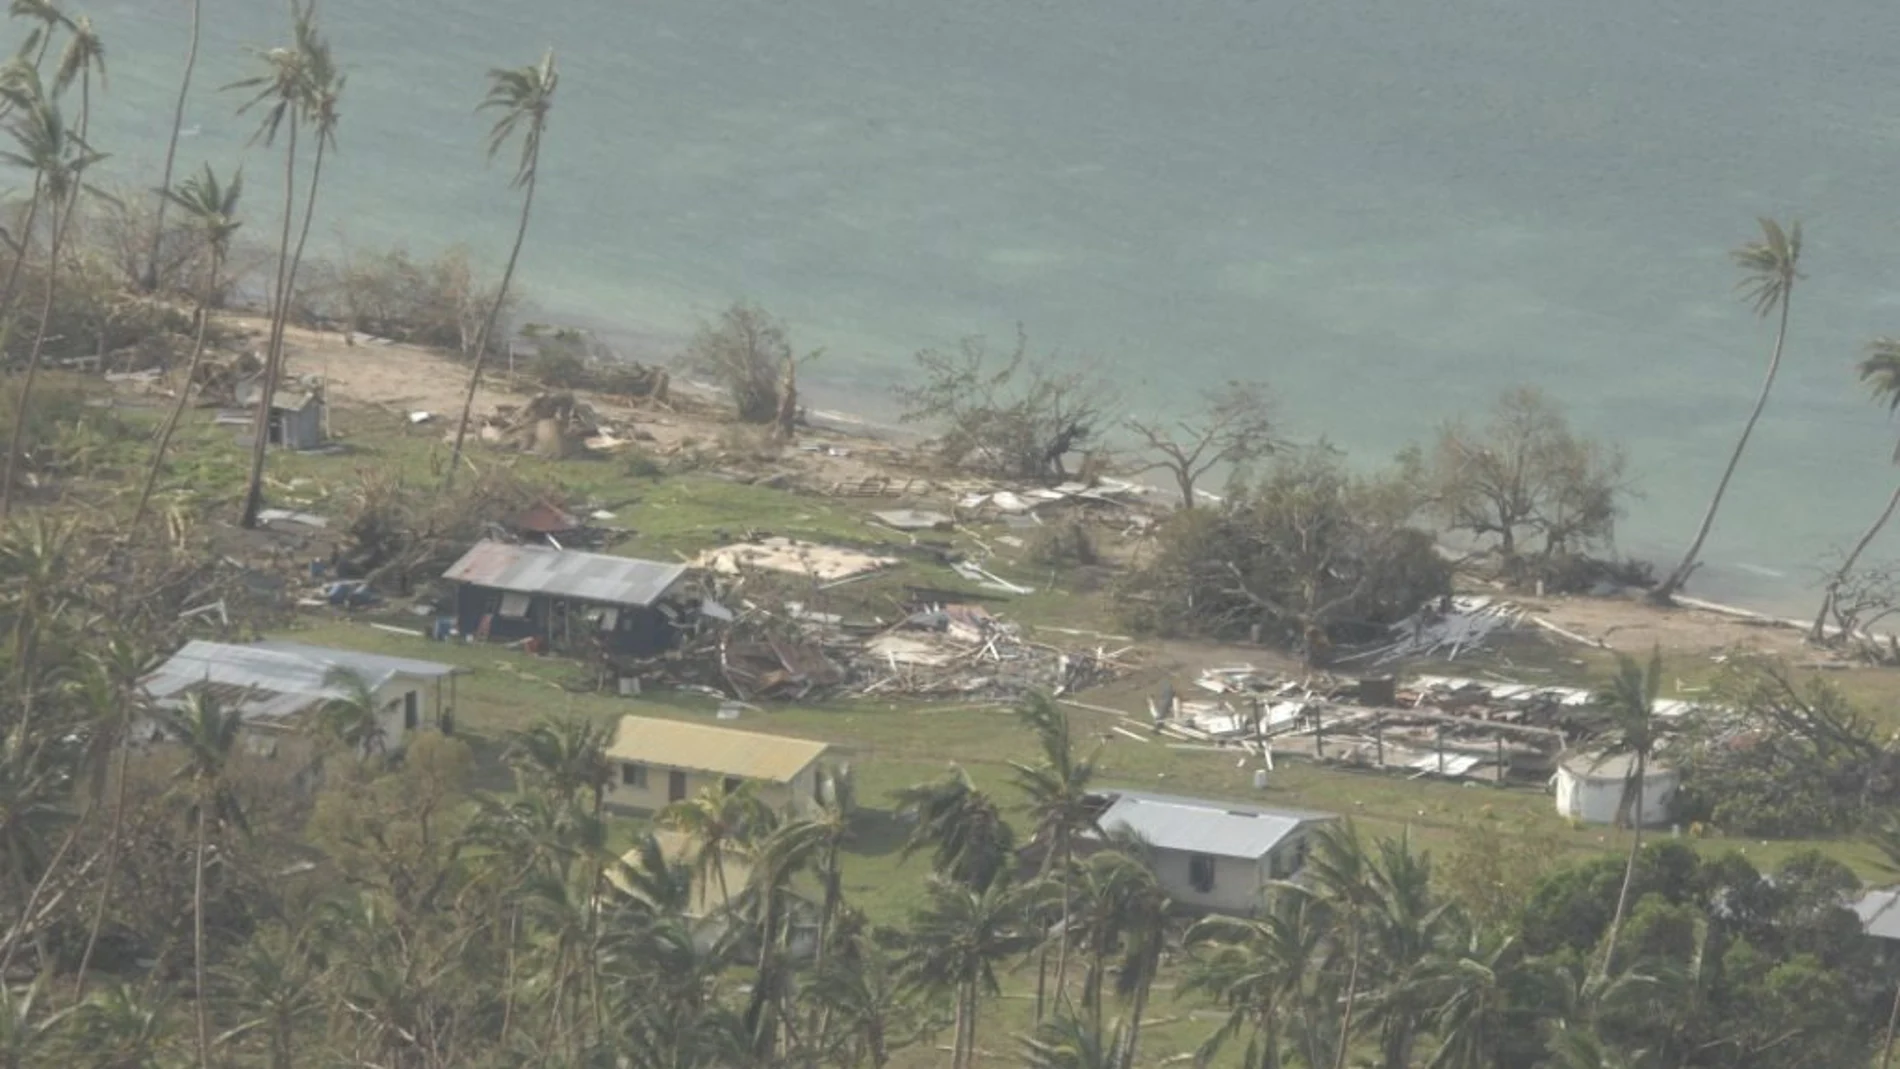 Fotografía facilitada por las Fuerzas de Defensa de Nueva Zelanda que muestra una vista aérea de los destrozos causados por el cilón Winston en Fiyi